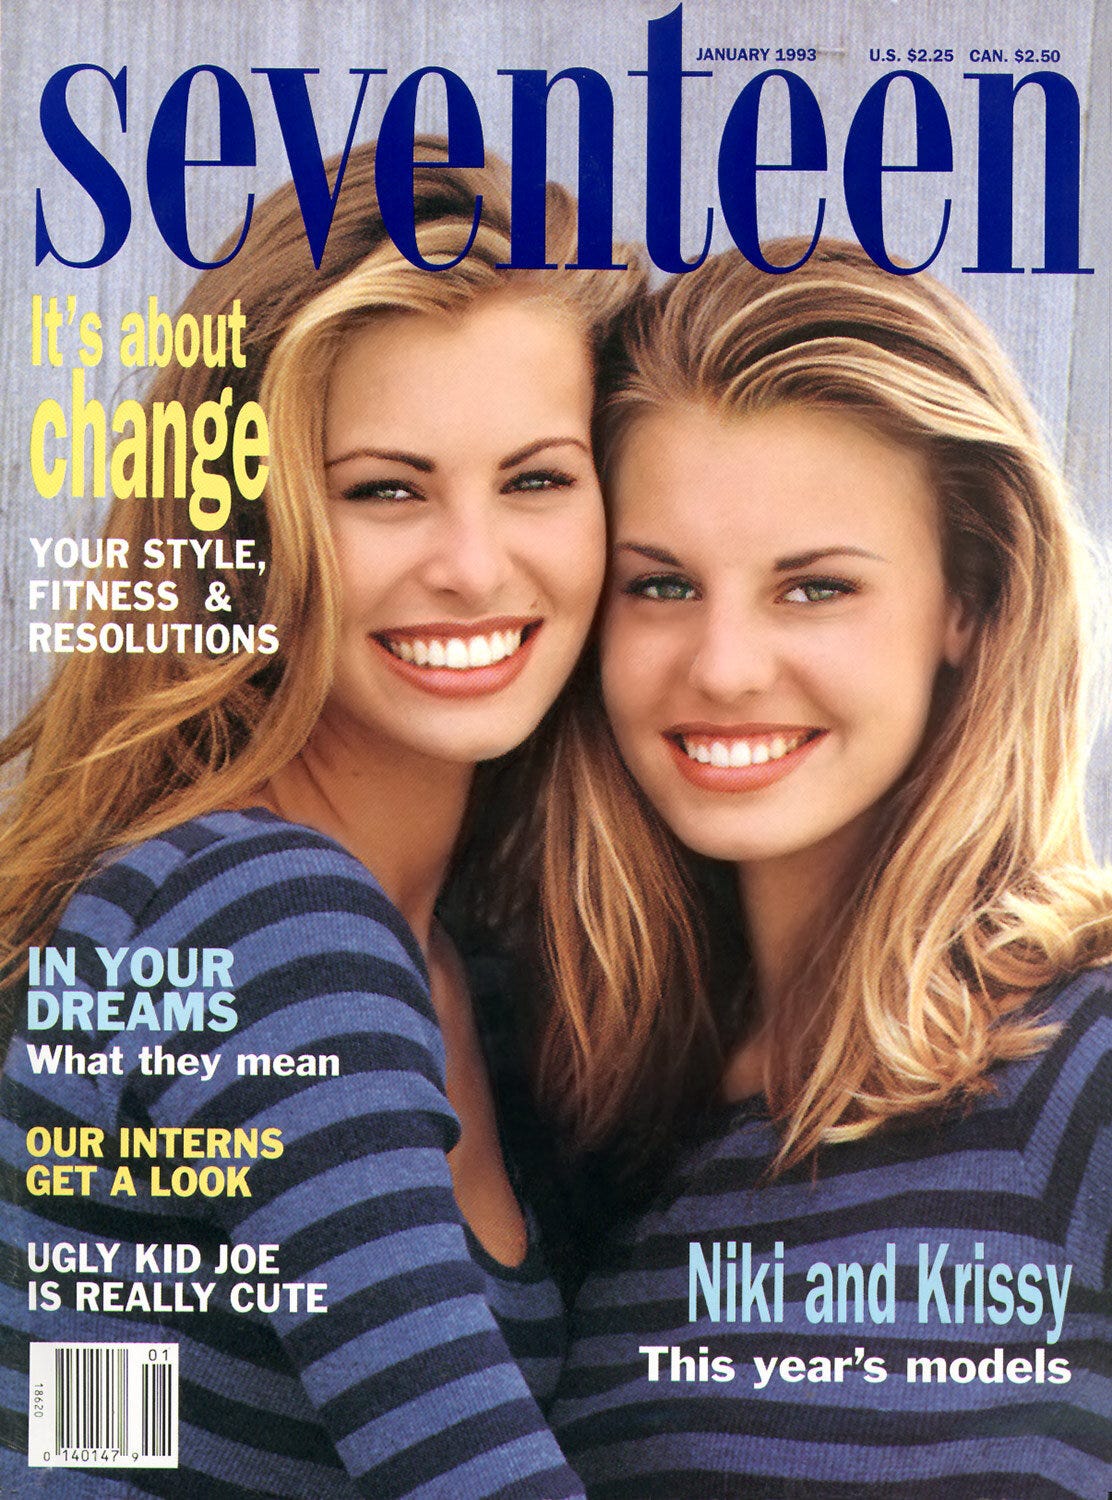 Niki és Krissy Taylor a Seventeen magazin címlapján